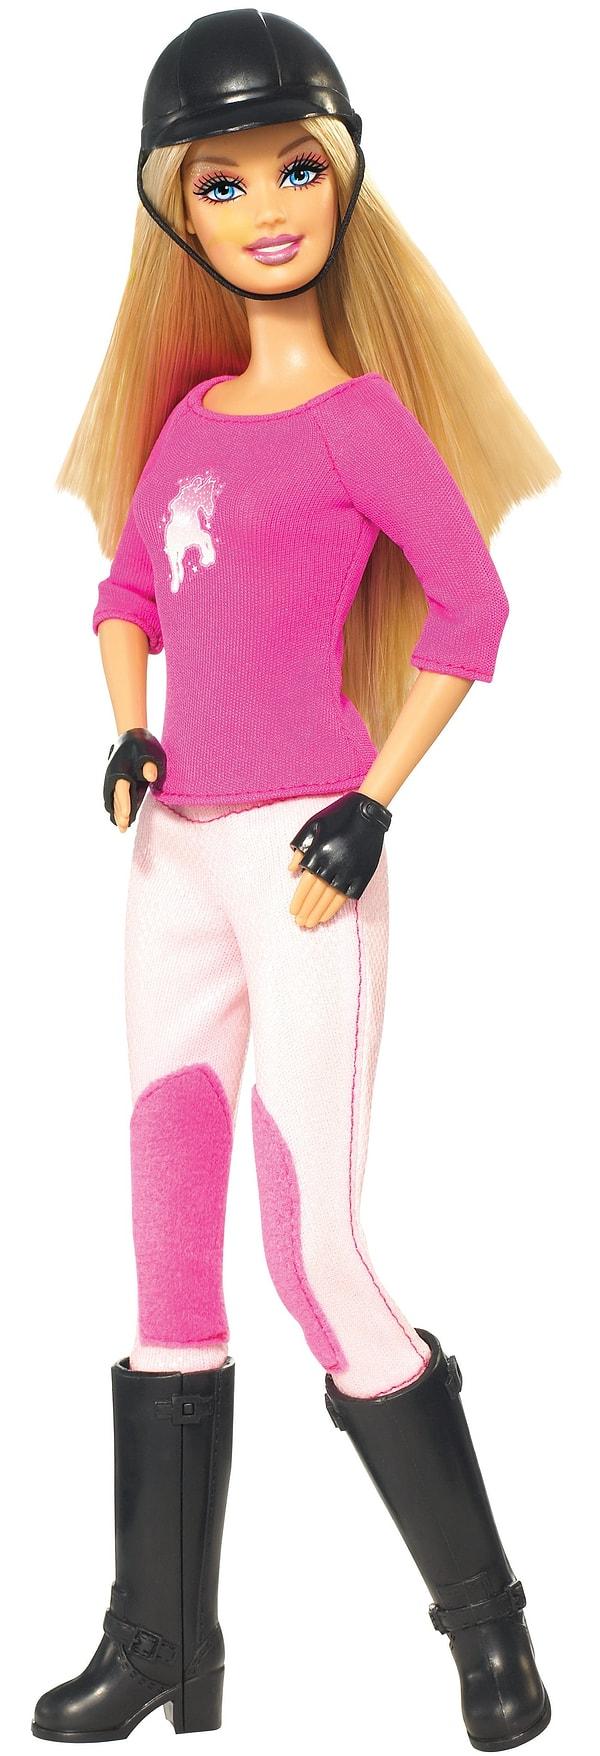 18. Barbie'nin vücudu da daha sportif bir hal aldı ve artık farklı sporlarla uğraşmaya başladı.